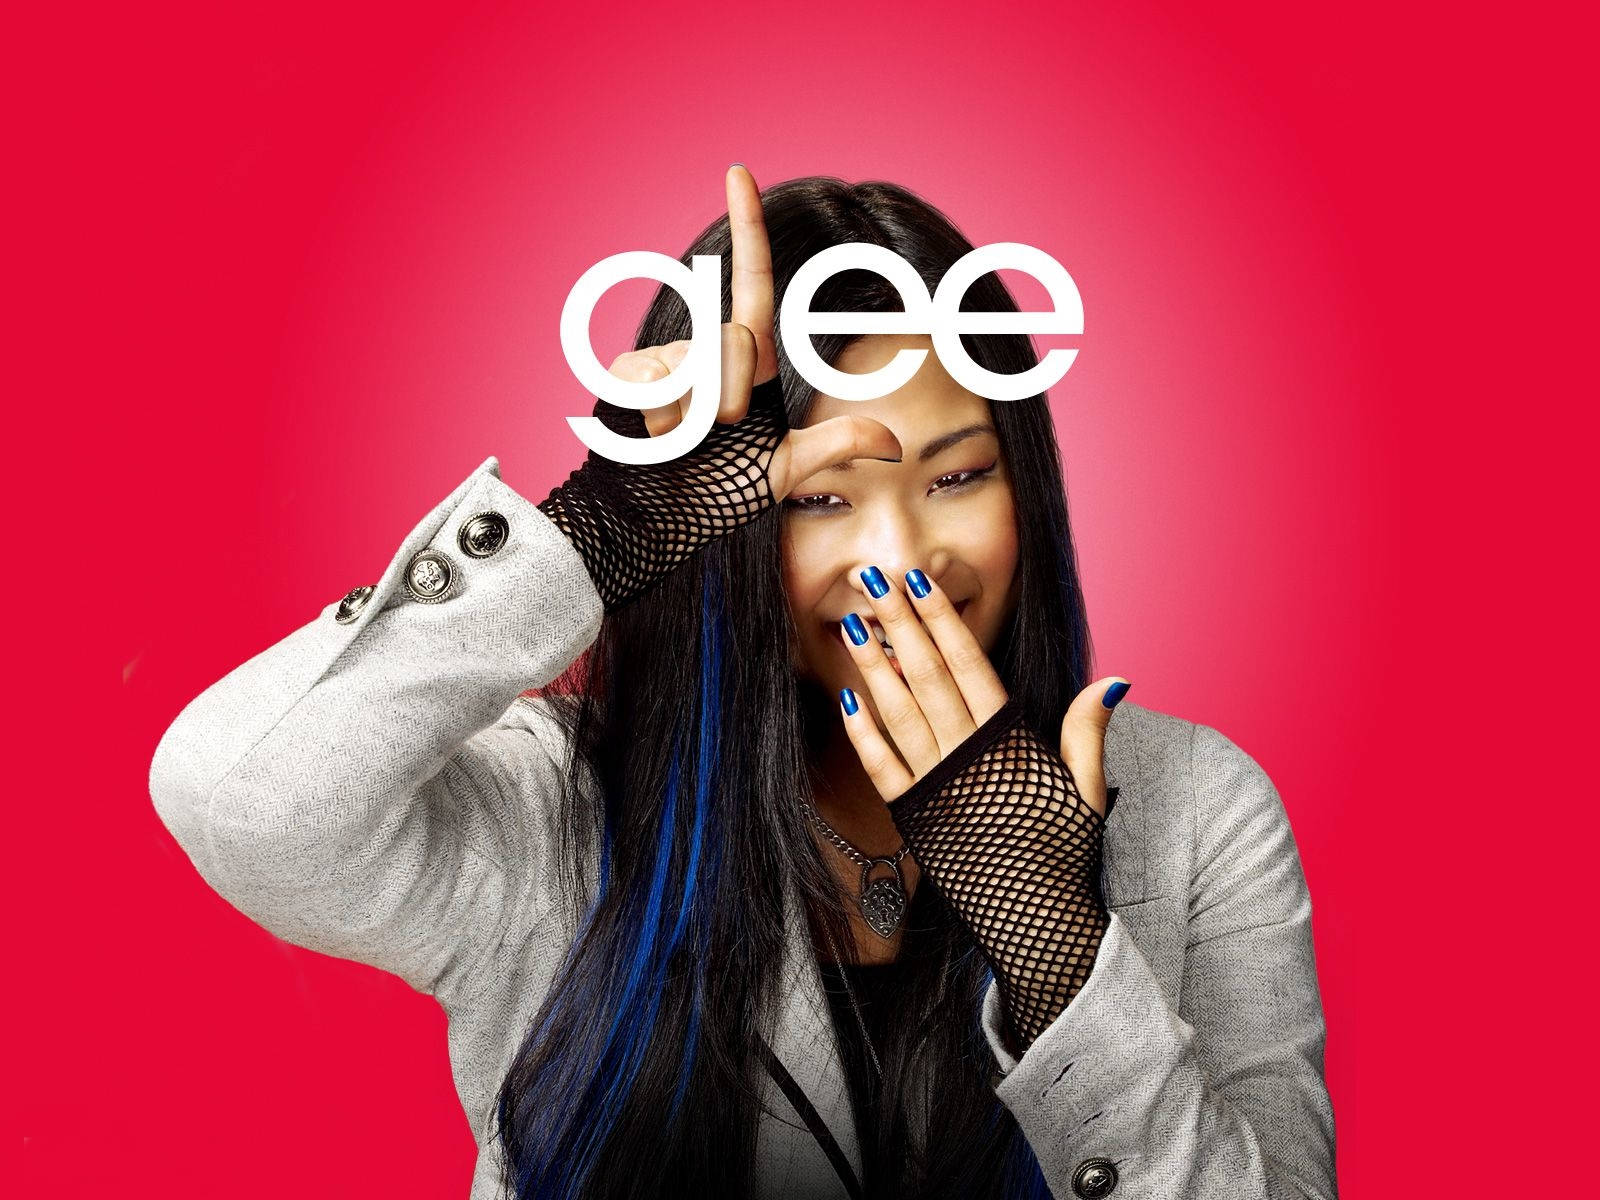 Medlemav Glee Cast-skådespelaren Jenna Ushkowitz. Wallpaper